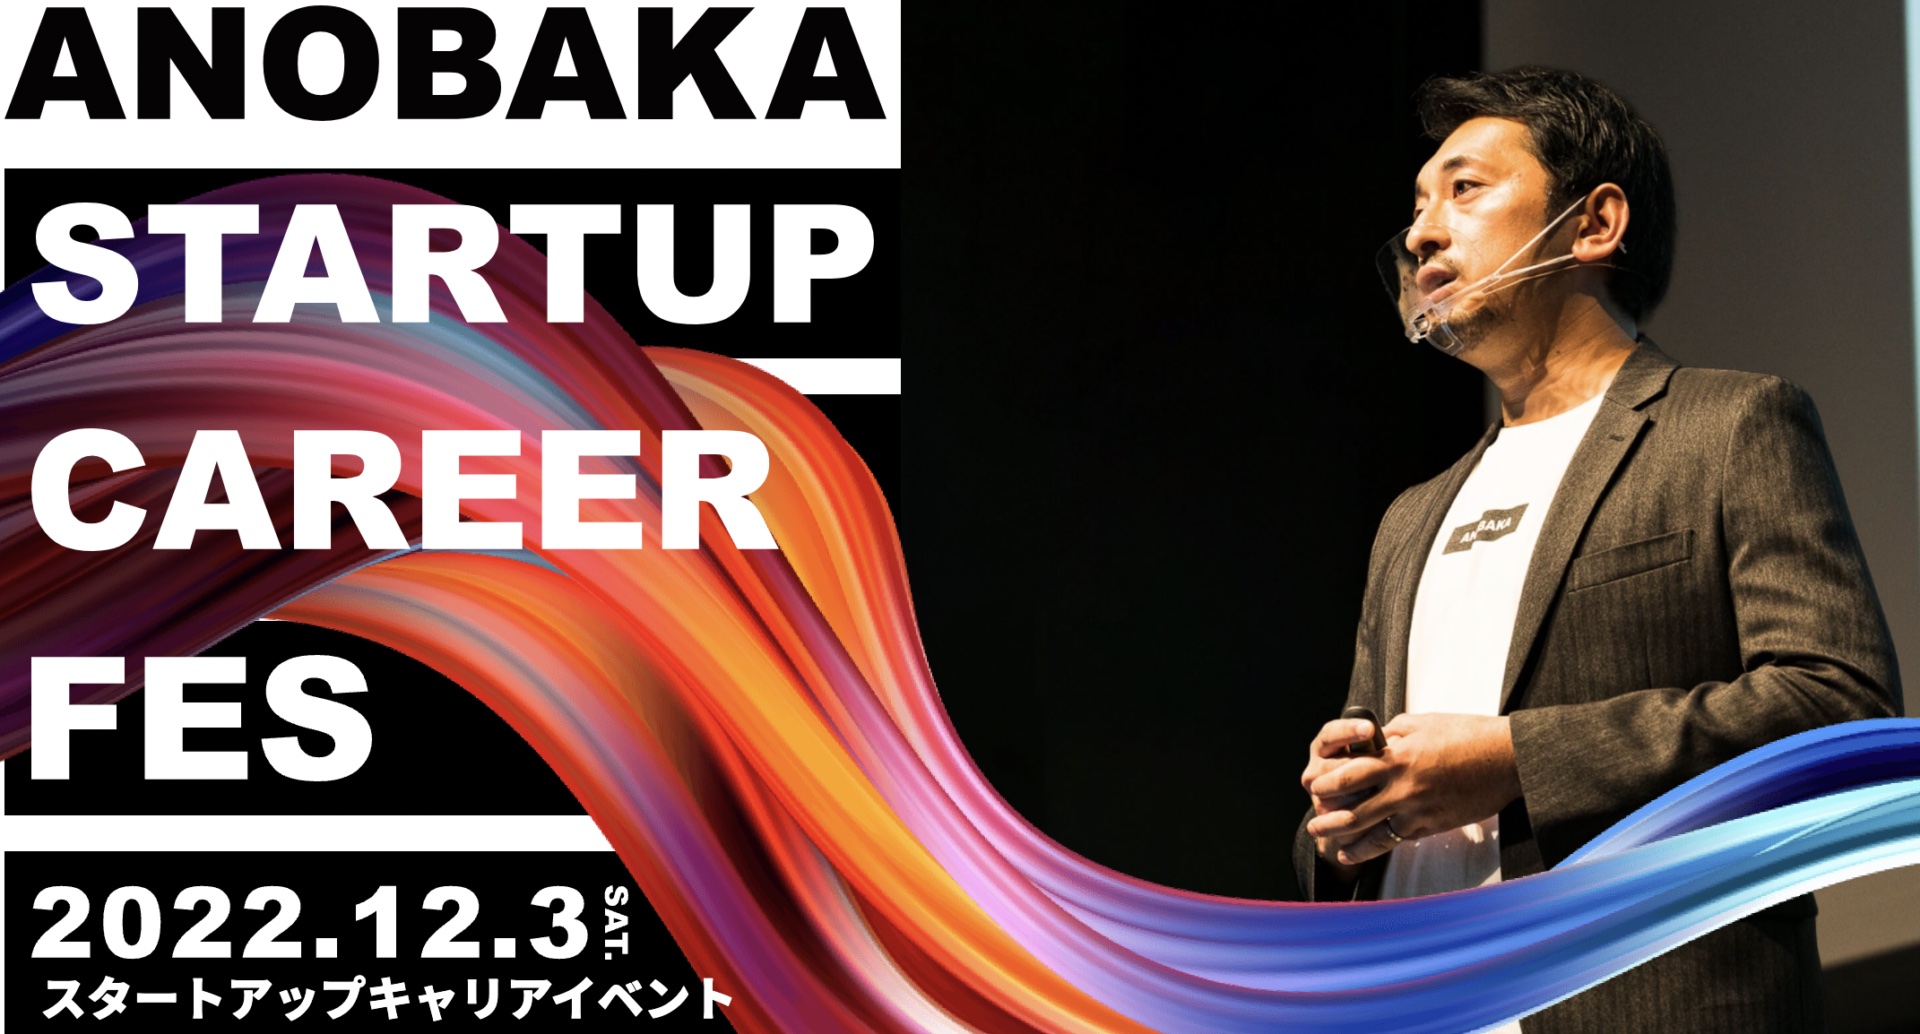 日本最大級のスタートアップ特化型キャリアイベント「ANOBAKA STARTUP CAREER FES」が、12月3日に開催！